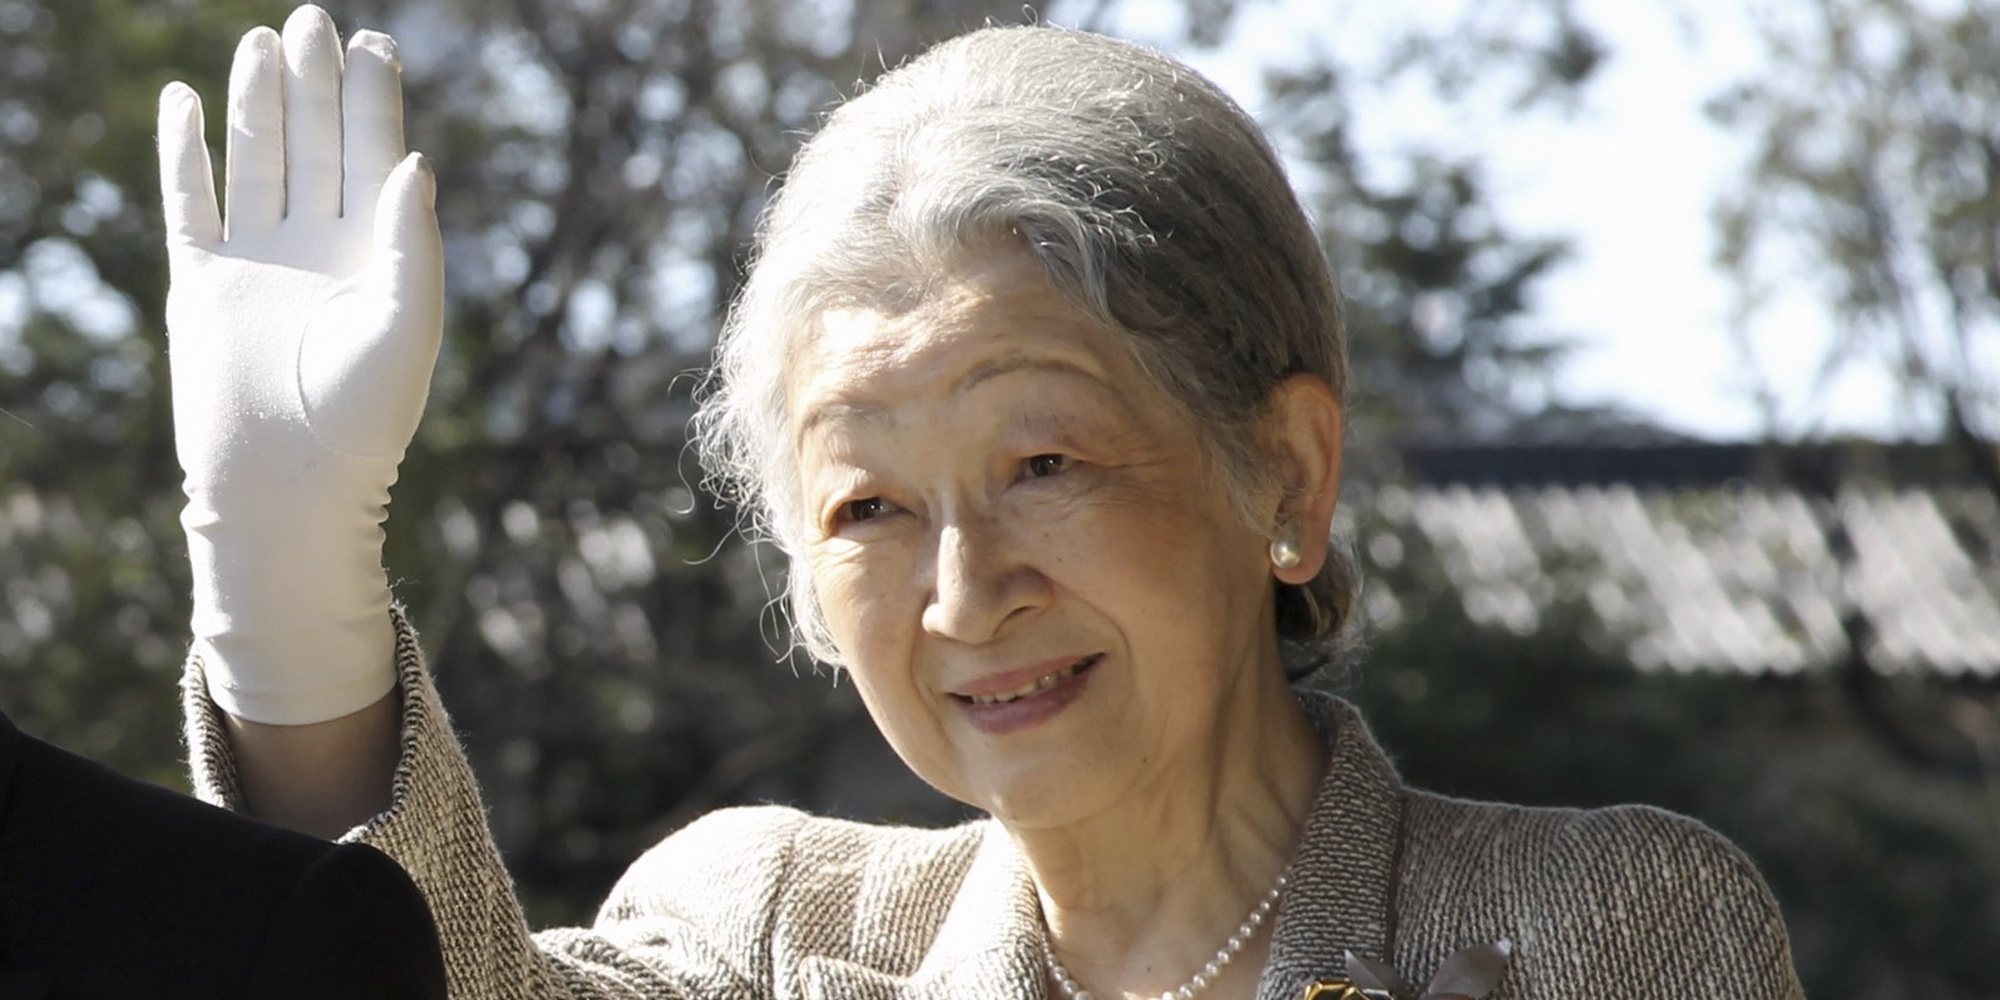 La Emperatriz Michiko de Japón será operada de su cáncer de mama